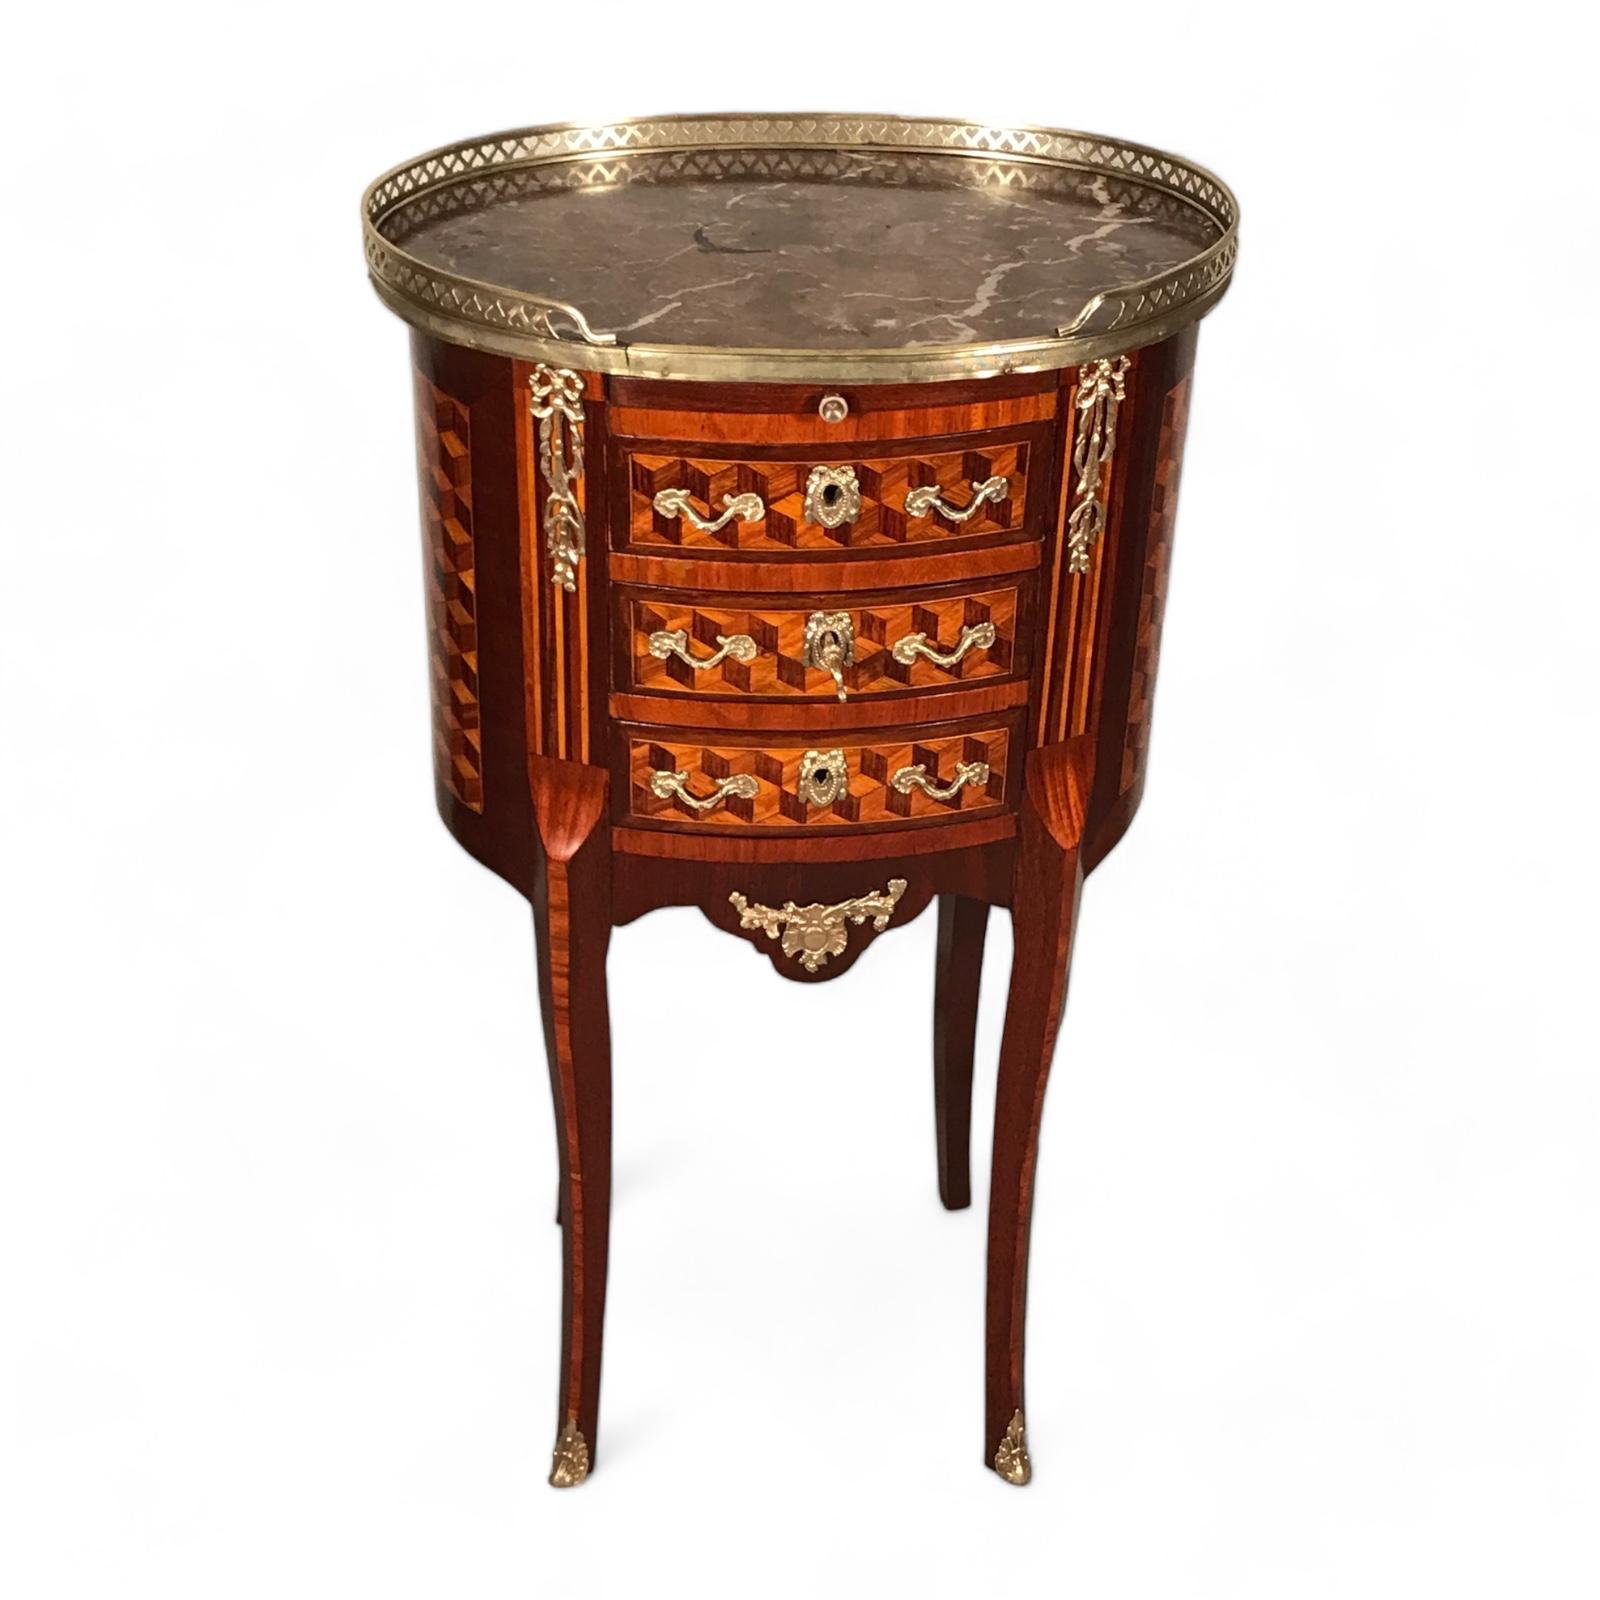 Der Beistelltisch Tambour im Louis XVI-Stil, der für seine exquisiten Blockintarsien bekannt ist, ist ein herausragendes Möbelstück. Dieser zeitlose Beistelltisch mit drei Schubladen und einer ausziehbaren Platte bietet Funktionalität und Eleganz